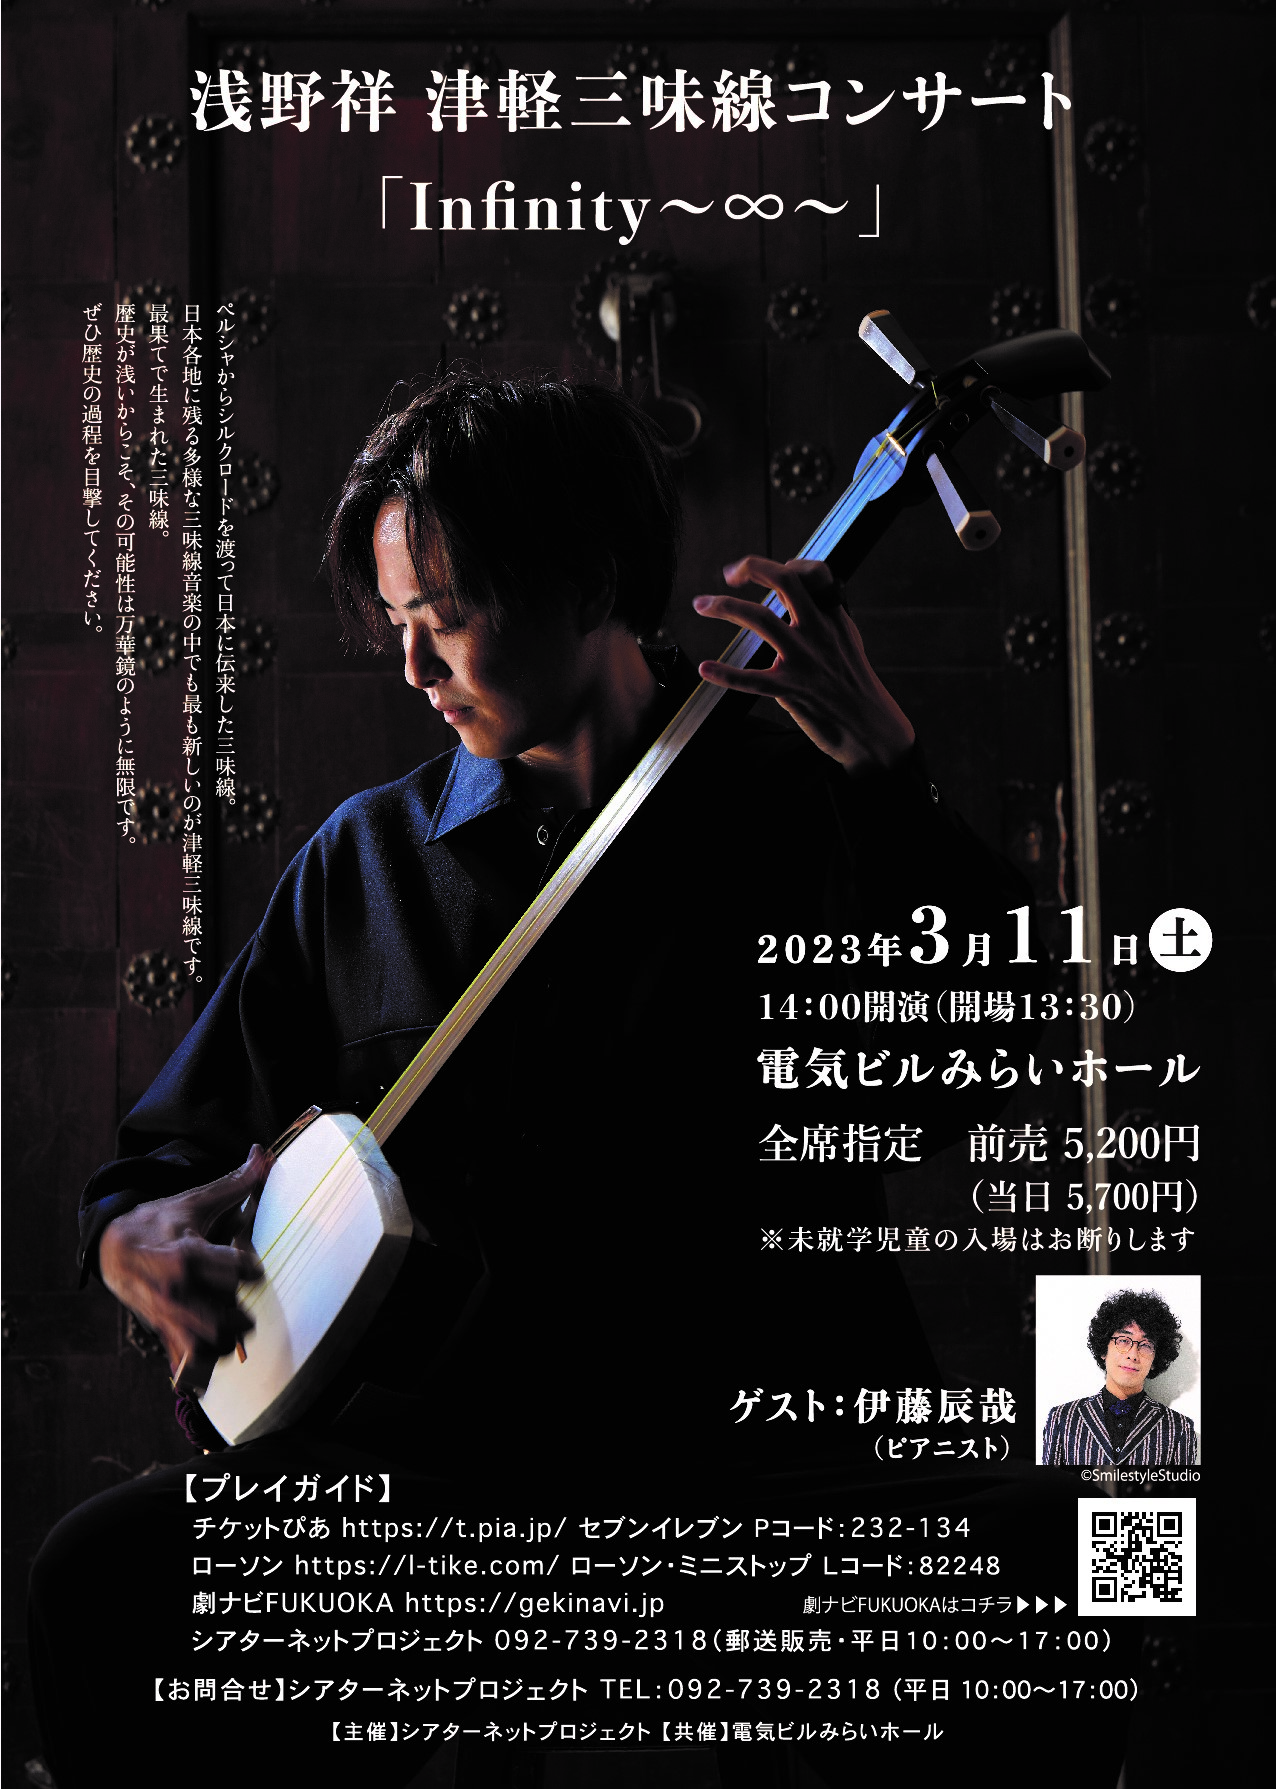 浅野祥 津軽三味線コンサート「Infinity～∞～」 株式会社シアターネットプロジェクト